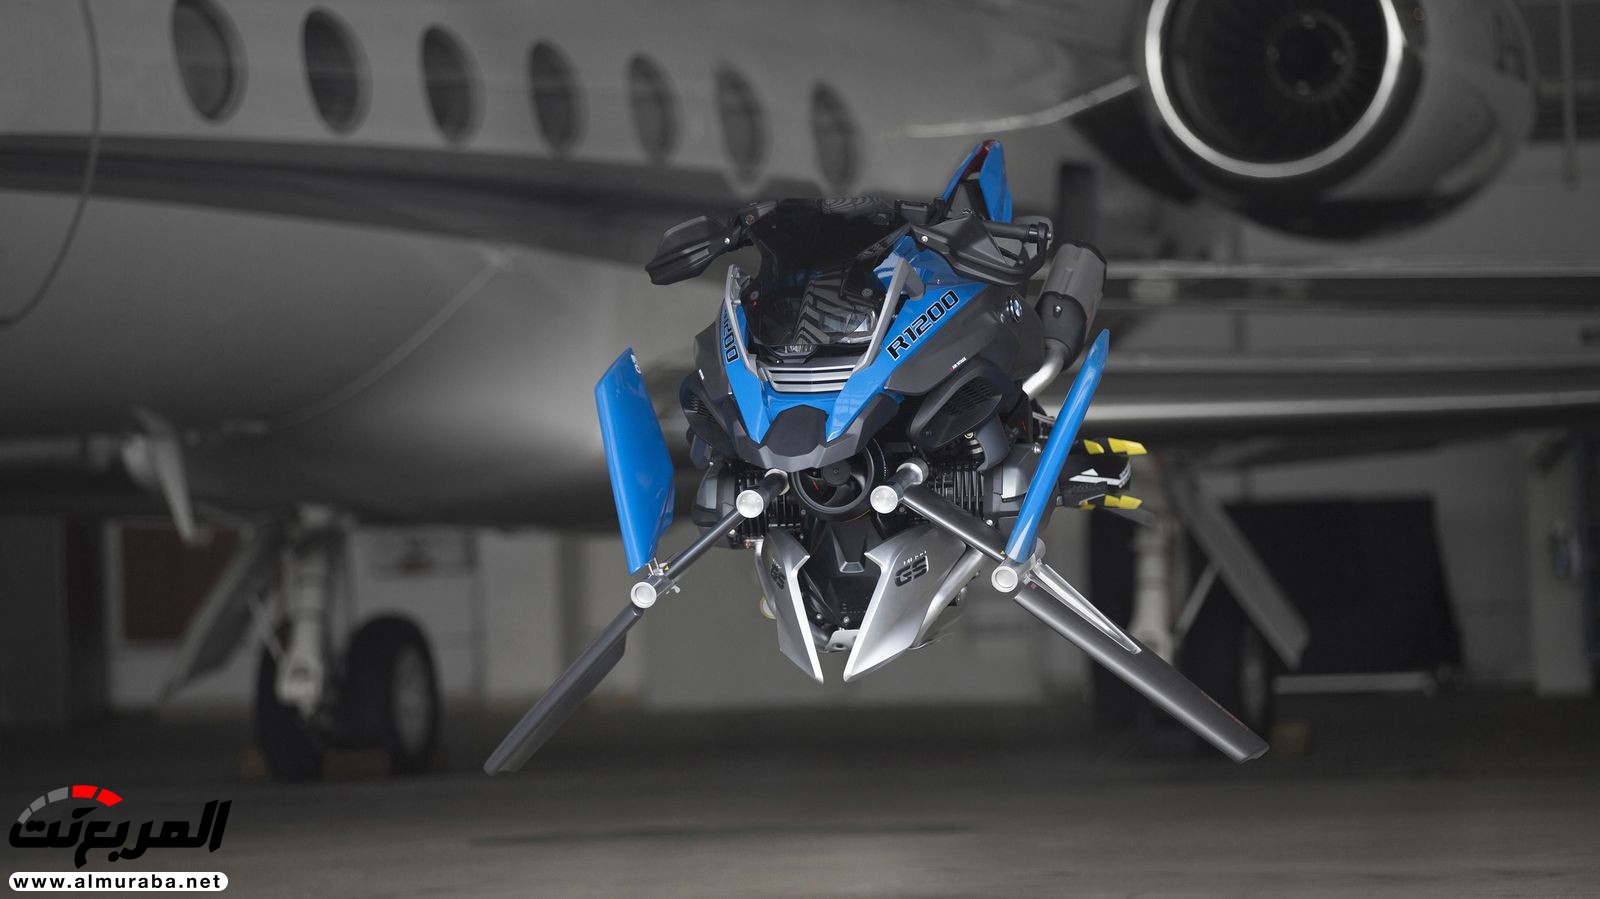 "بي إم دبليو" تكشف عن كونسبت الدراجة النارية الطائرة بعالم ليجو BMW 12